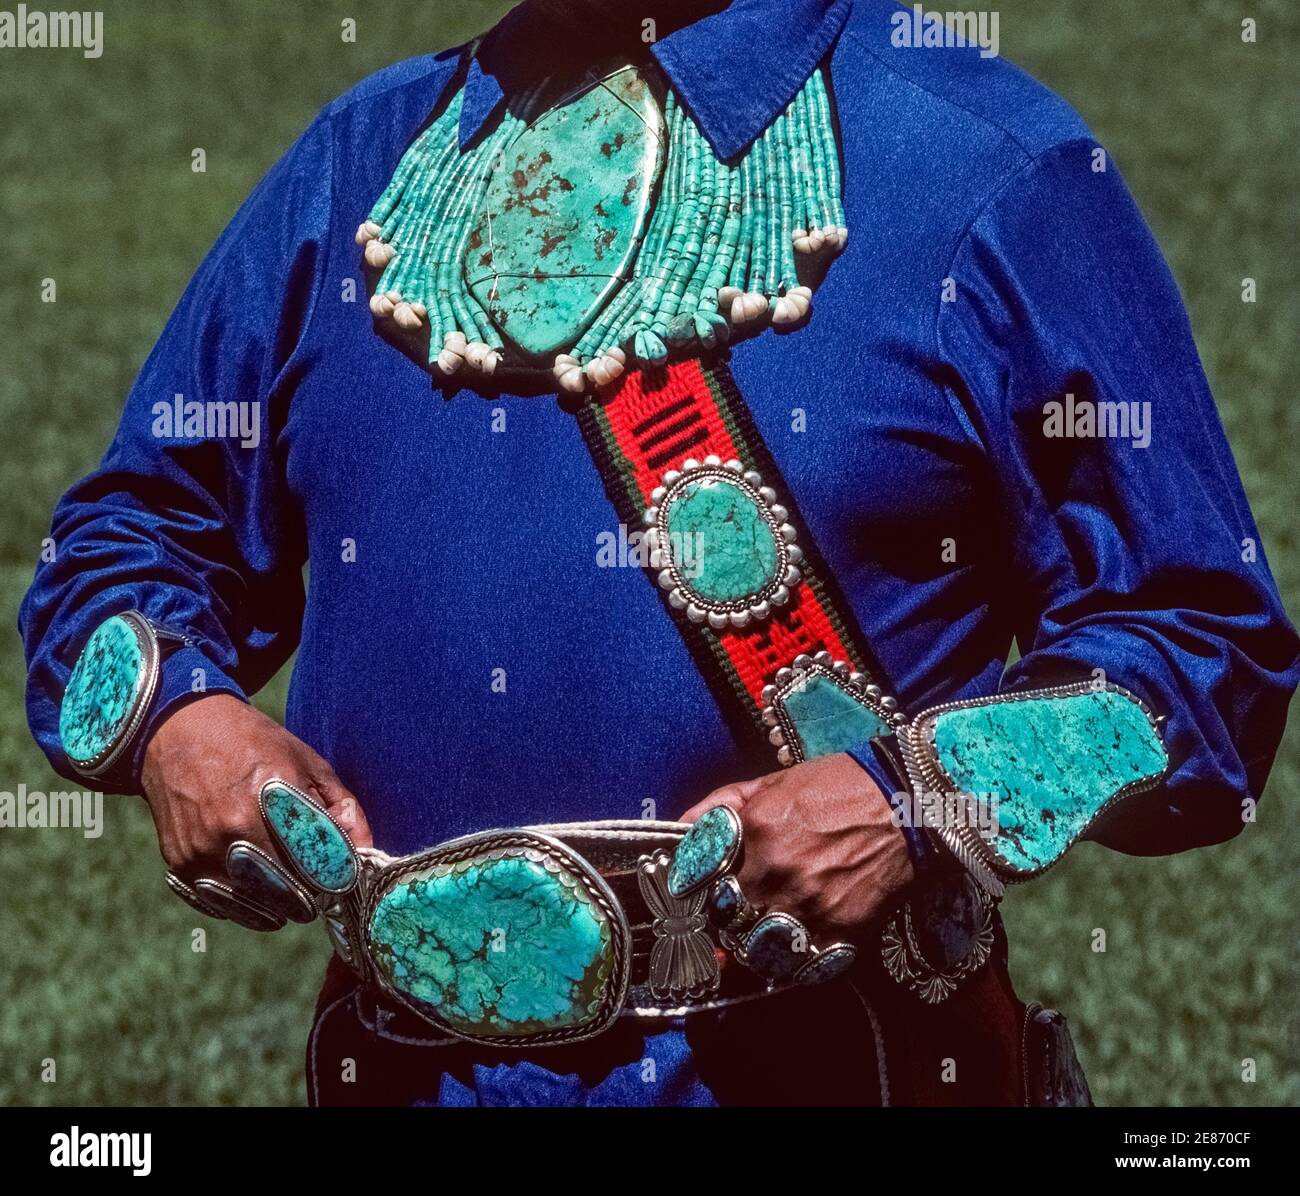 Questo magnifico gioiello indiano turchese e argento è stato realizzato e indossato da un nativo americano Zuni Pueblo ad Albuquerque, New Mexico, USA. Le gemme semi-verdi-blu colorate di forme e dimensioni diverse sono state modellato dall'artigiano indiano artistico in una collana accattivante, bracciali, anelli, una fibbia per cintura e un bandoliere indossato sul petto. I gioielli turchesi sono una forma d'arte che riflette la creatività e la cultura dei nativi americani nel corso dei secoli, in particolare i membri di tre tribù indiane negli Stati Uniti sudoccidentali, Navajo, Hopi e Zuni. Foto Stock